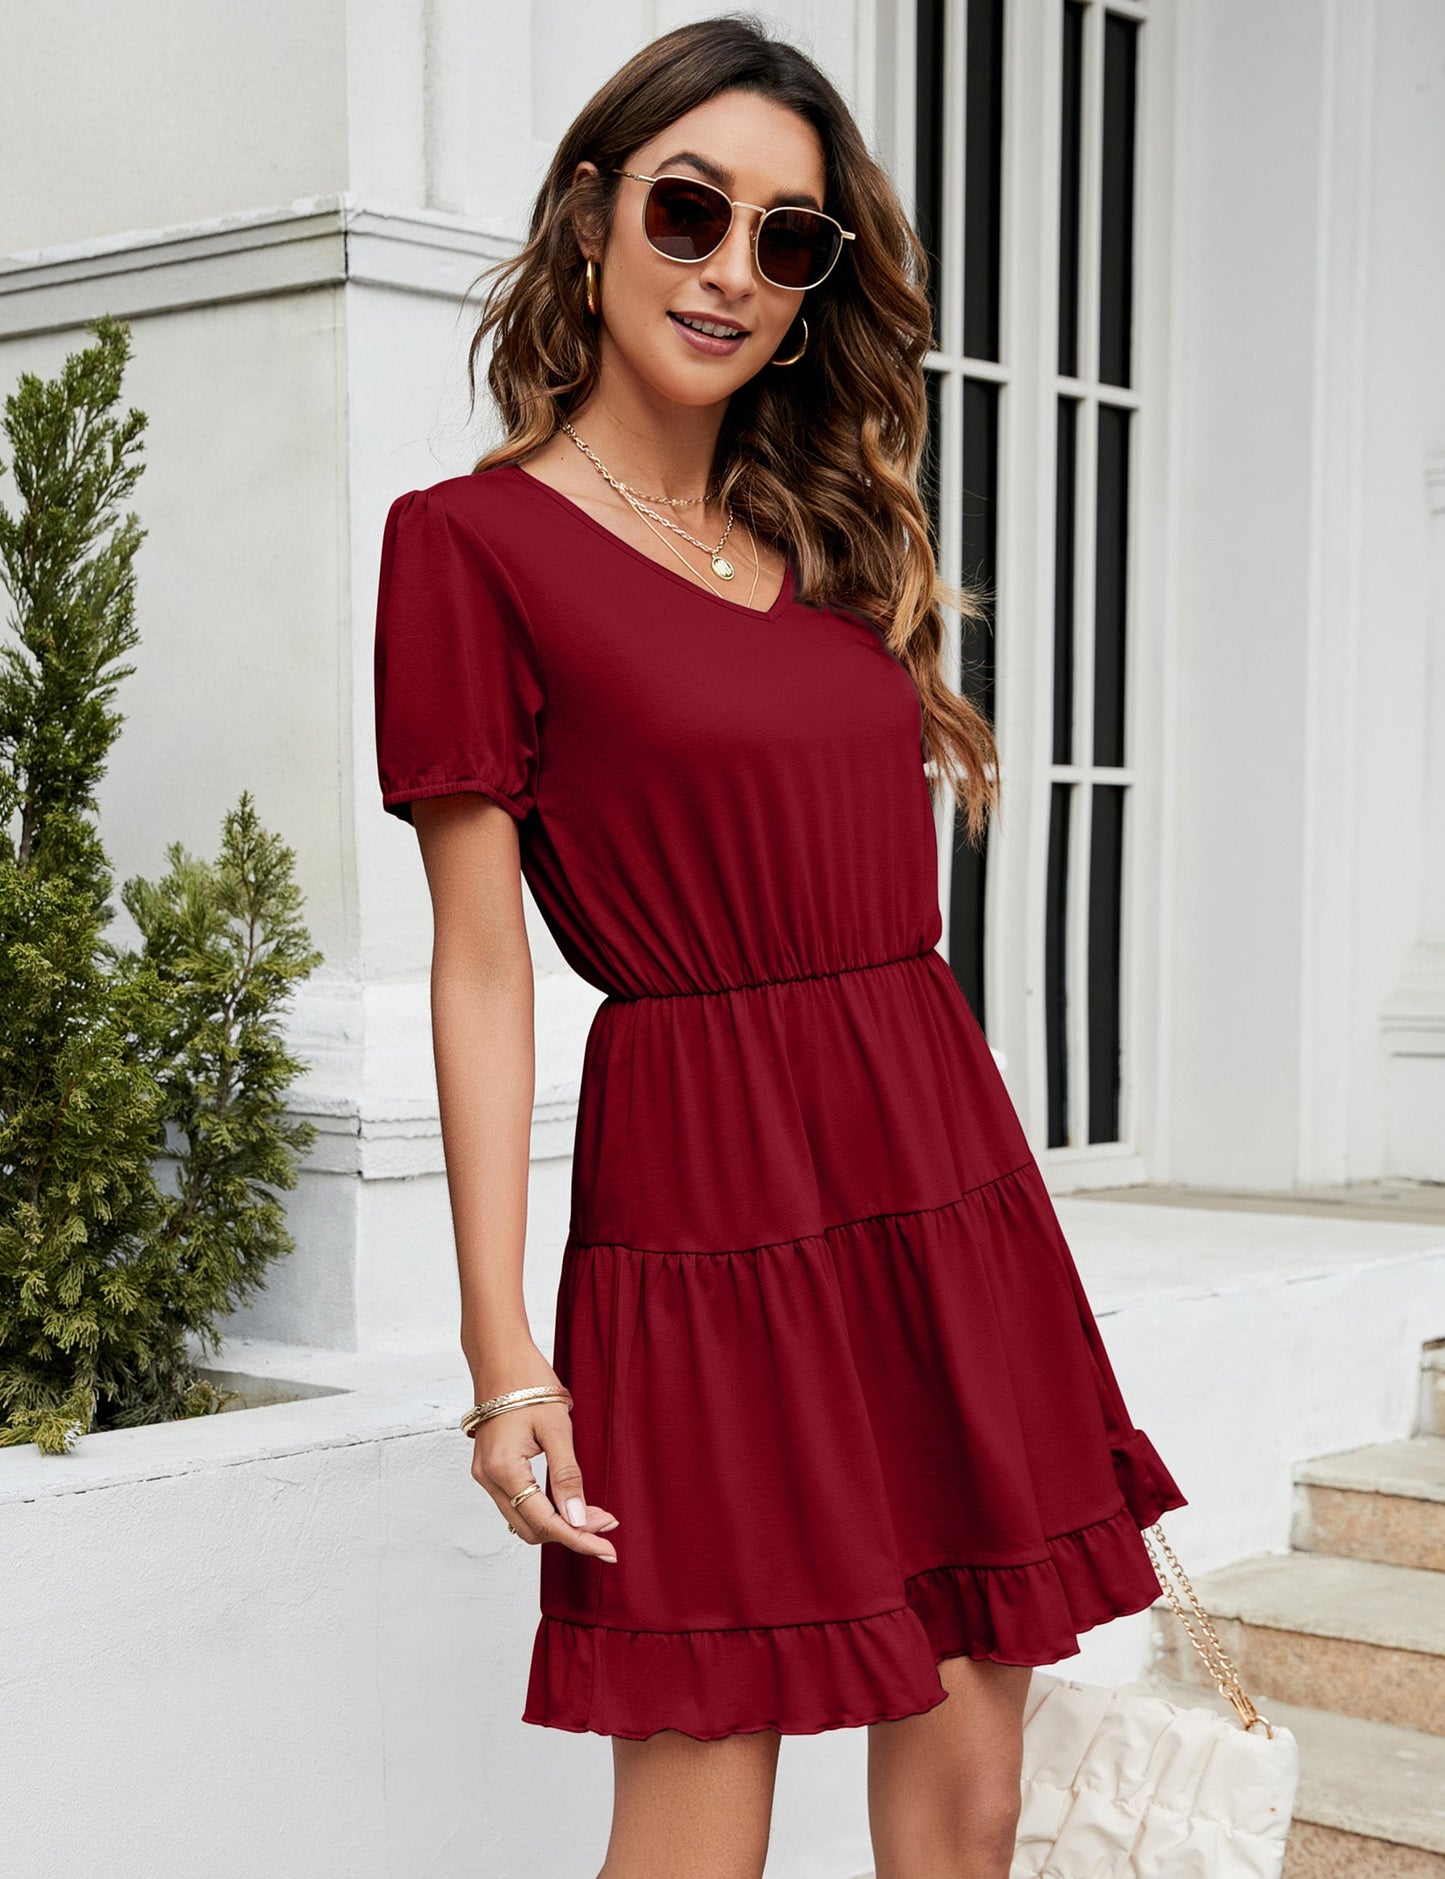 YESFASHION Women's Ruffled Mini Dress Wine Red